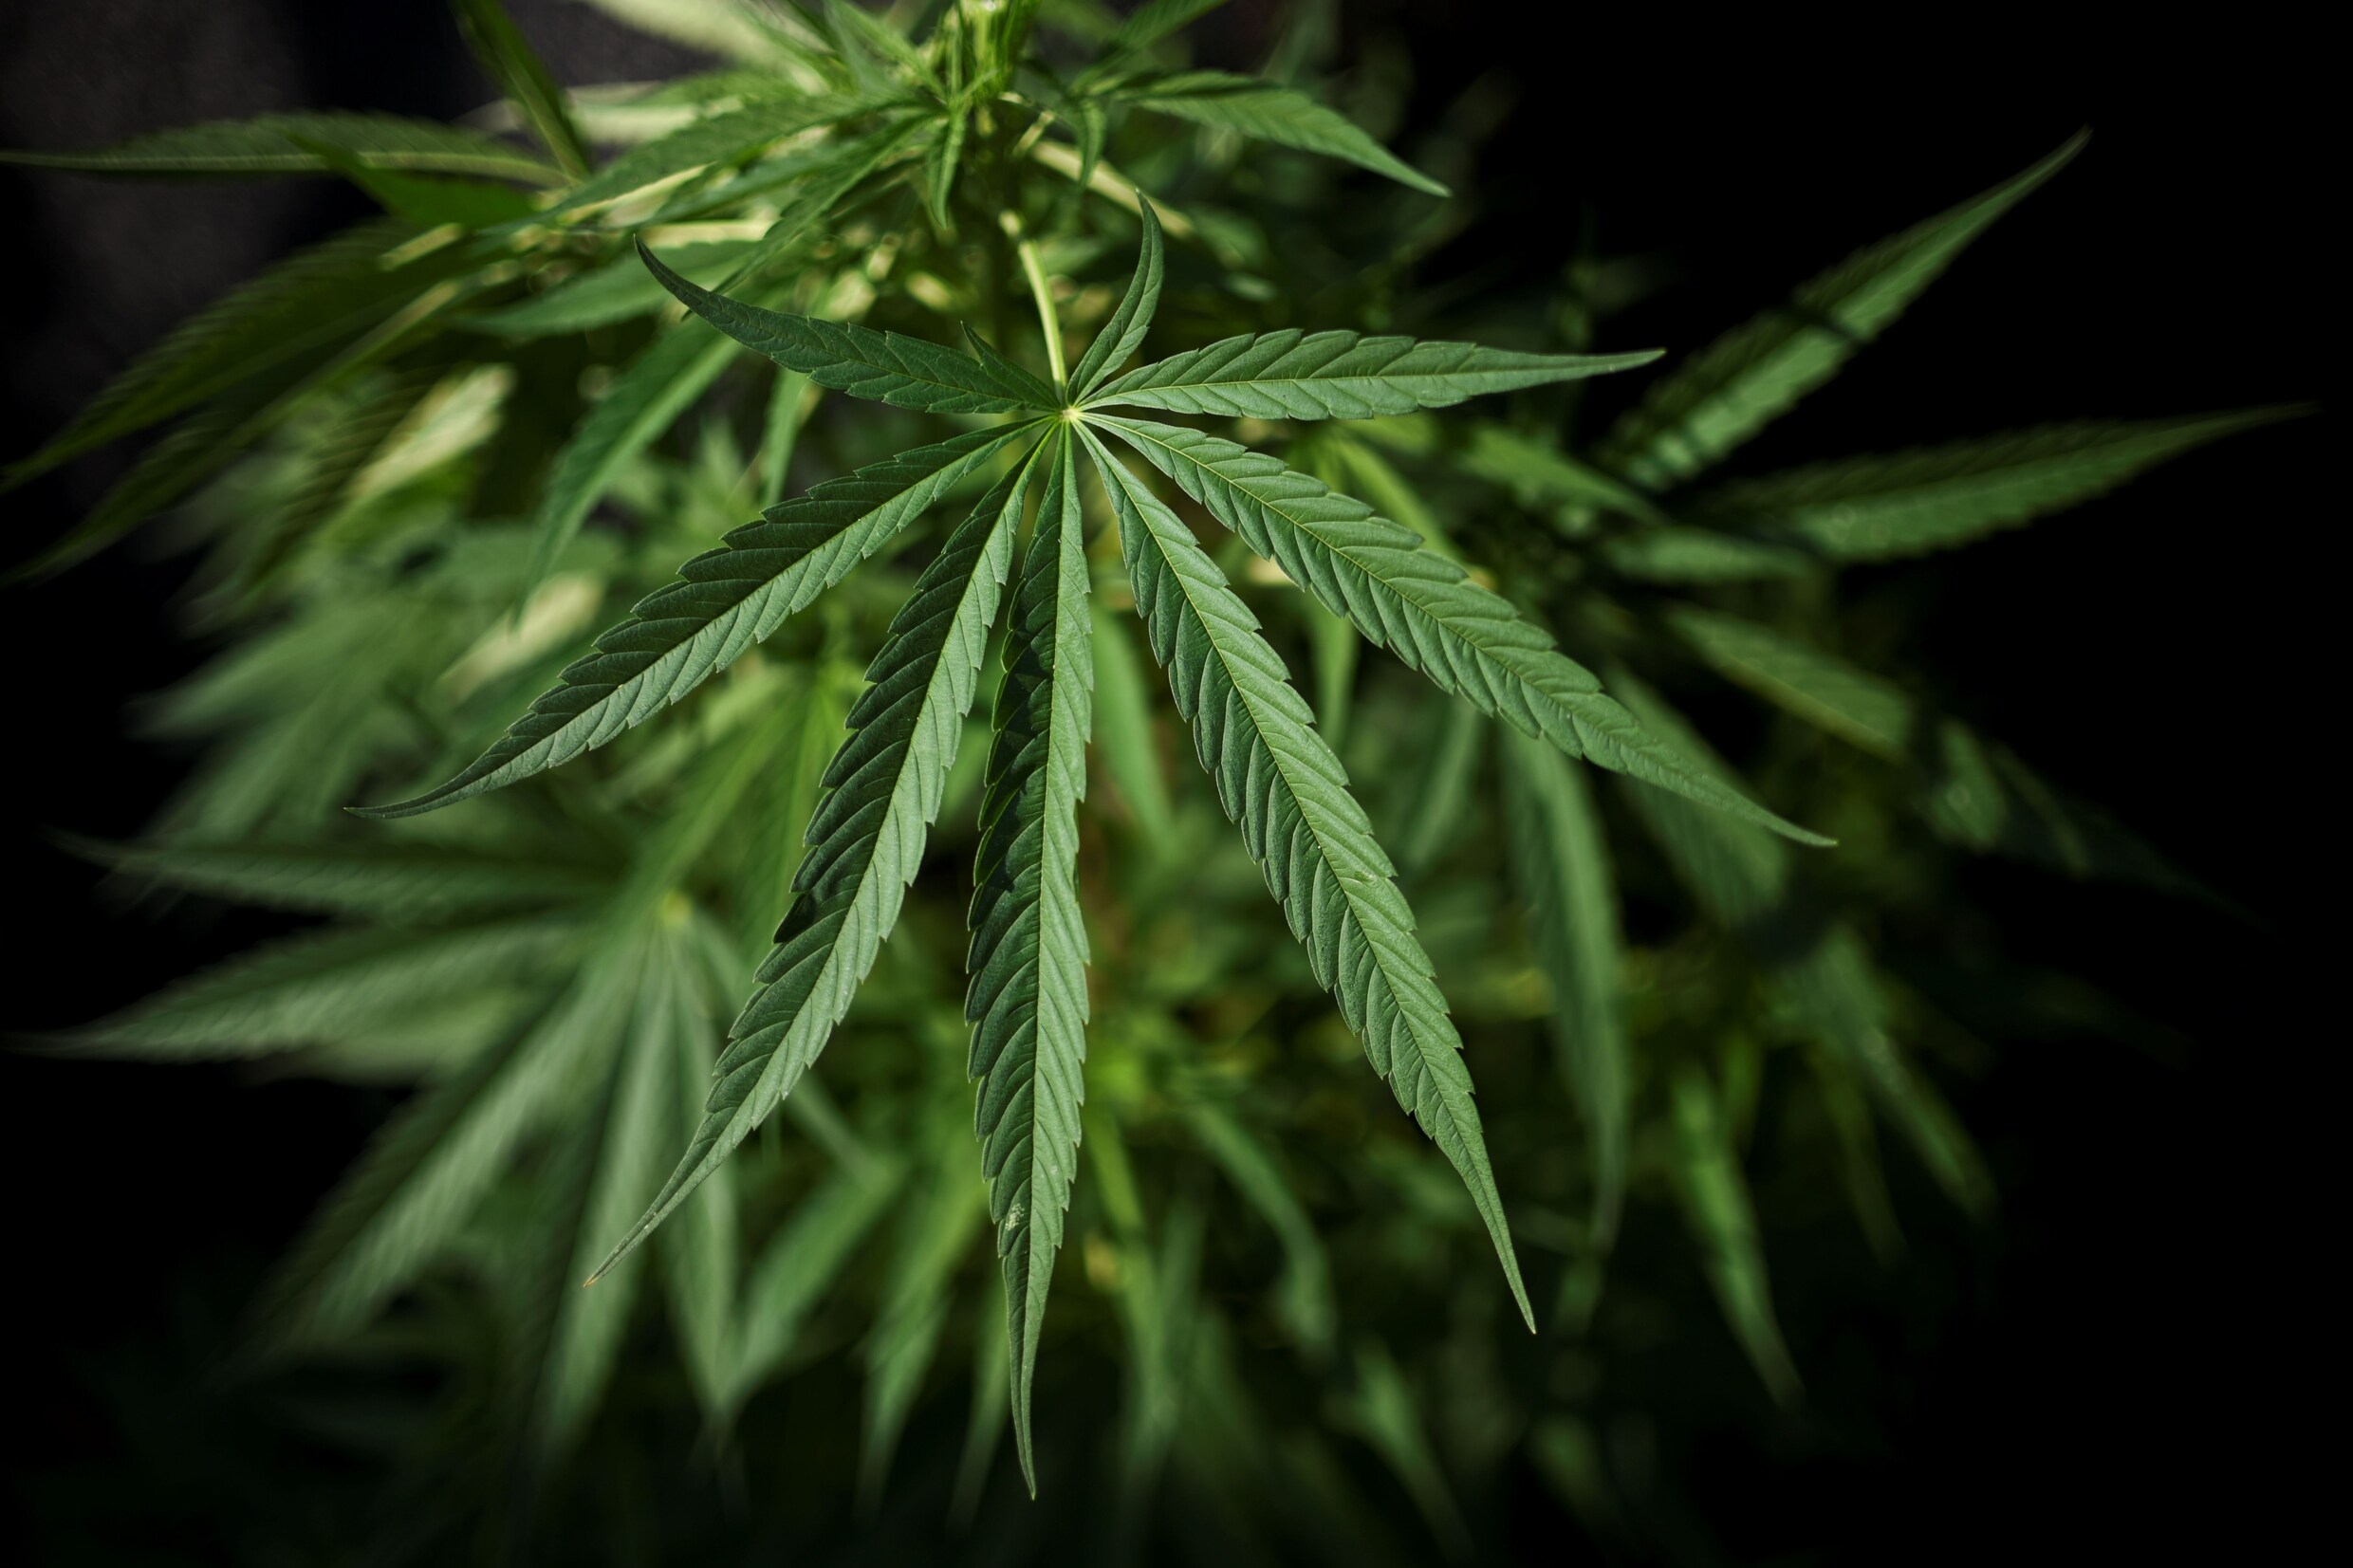 Zevental vergaart 1,2 miljoen euro met 3 cannabisplantages